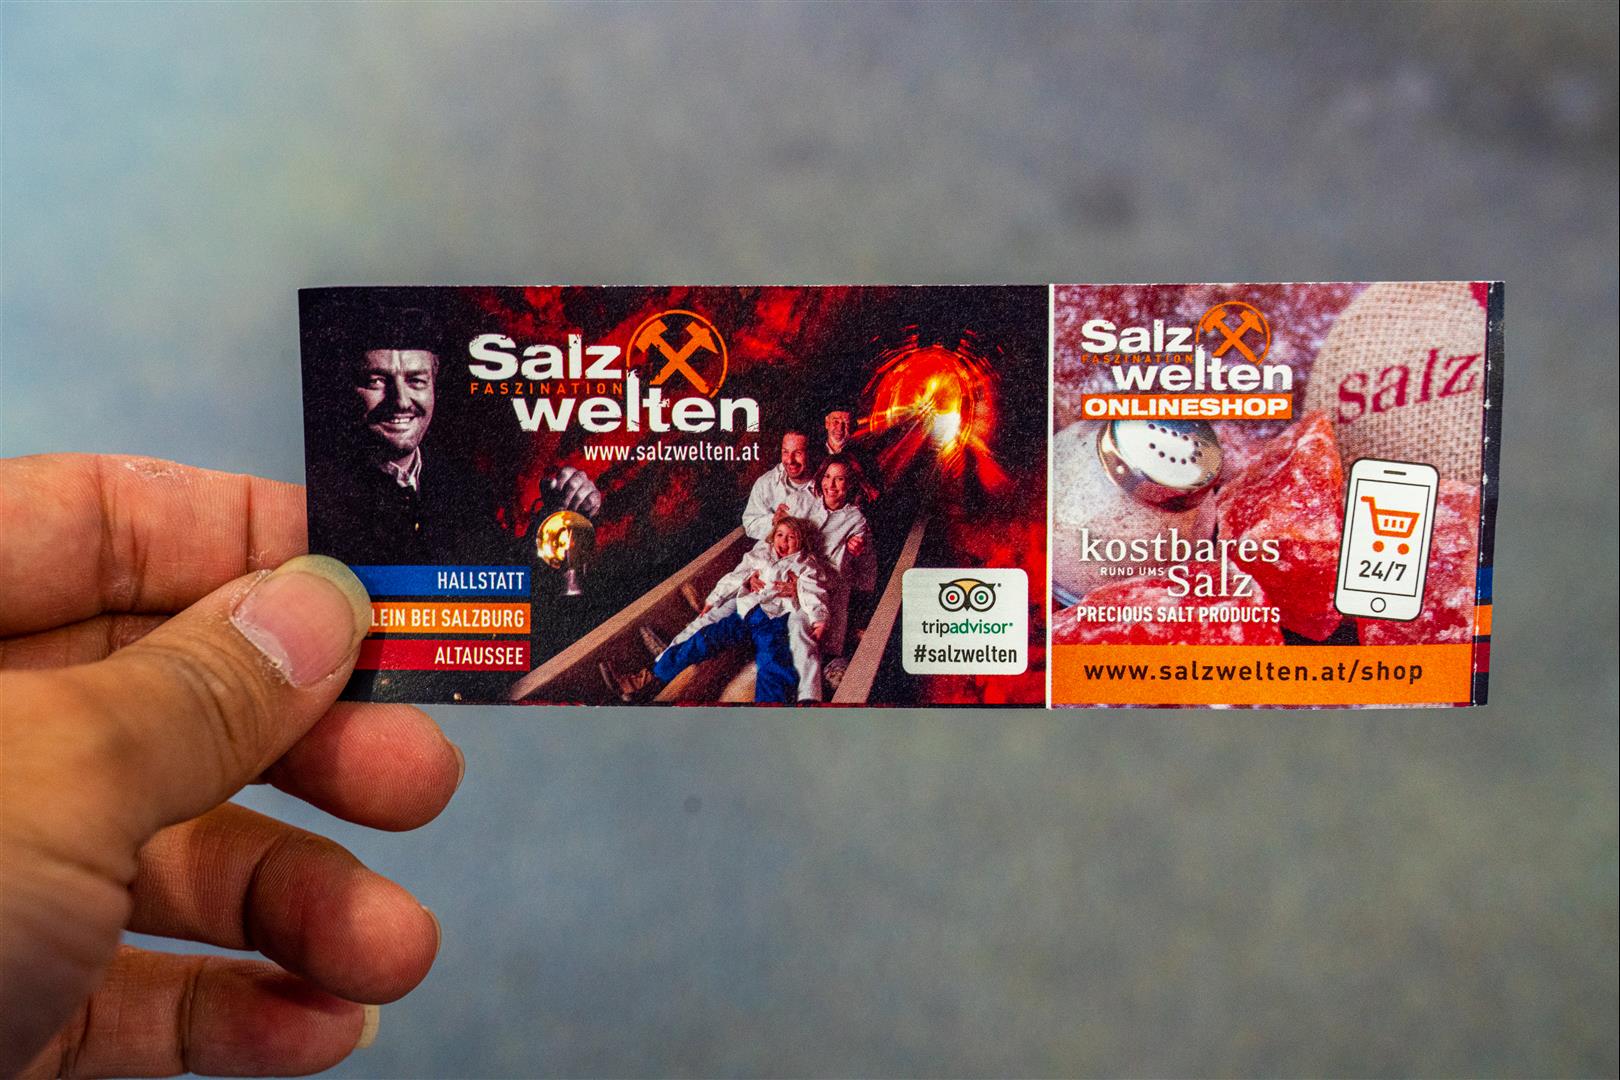 [奧地利/哈斯塔特] 哈斯塔特鹽礦 - Hallstatt 最值得一來體驗 - 位置、票價、照片整理